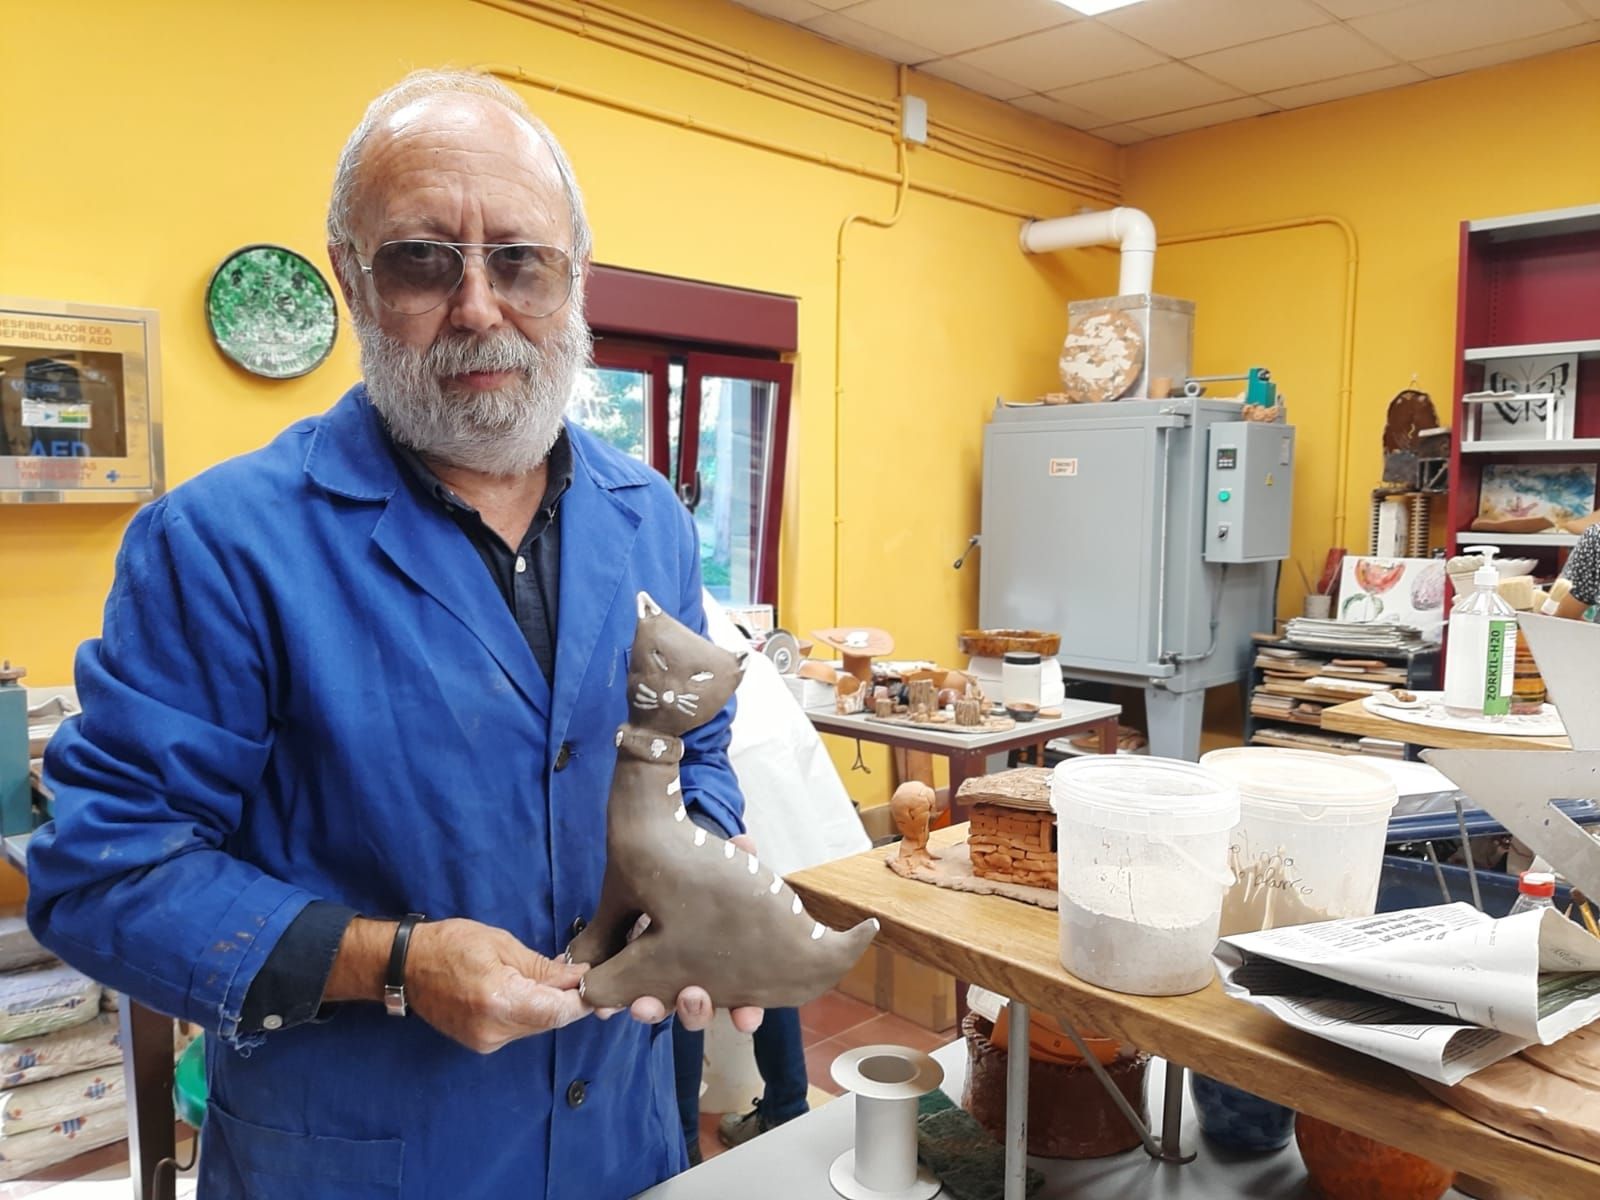 Llanera, moldeada en cerámica: así es el taller cultural con más demanda del municipio